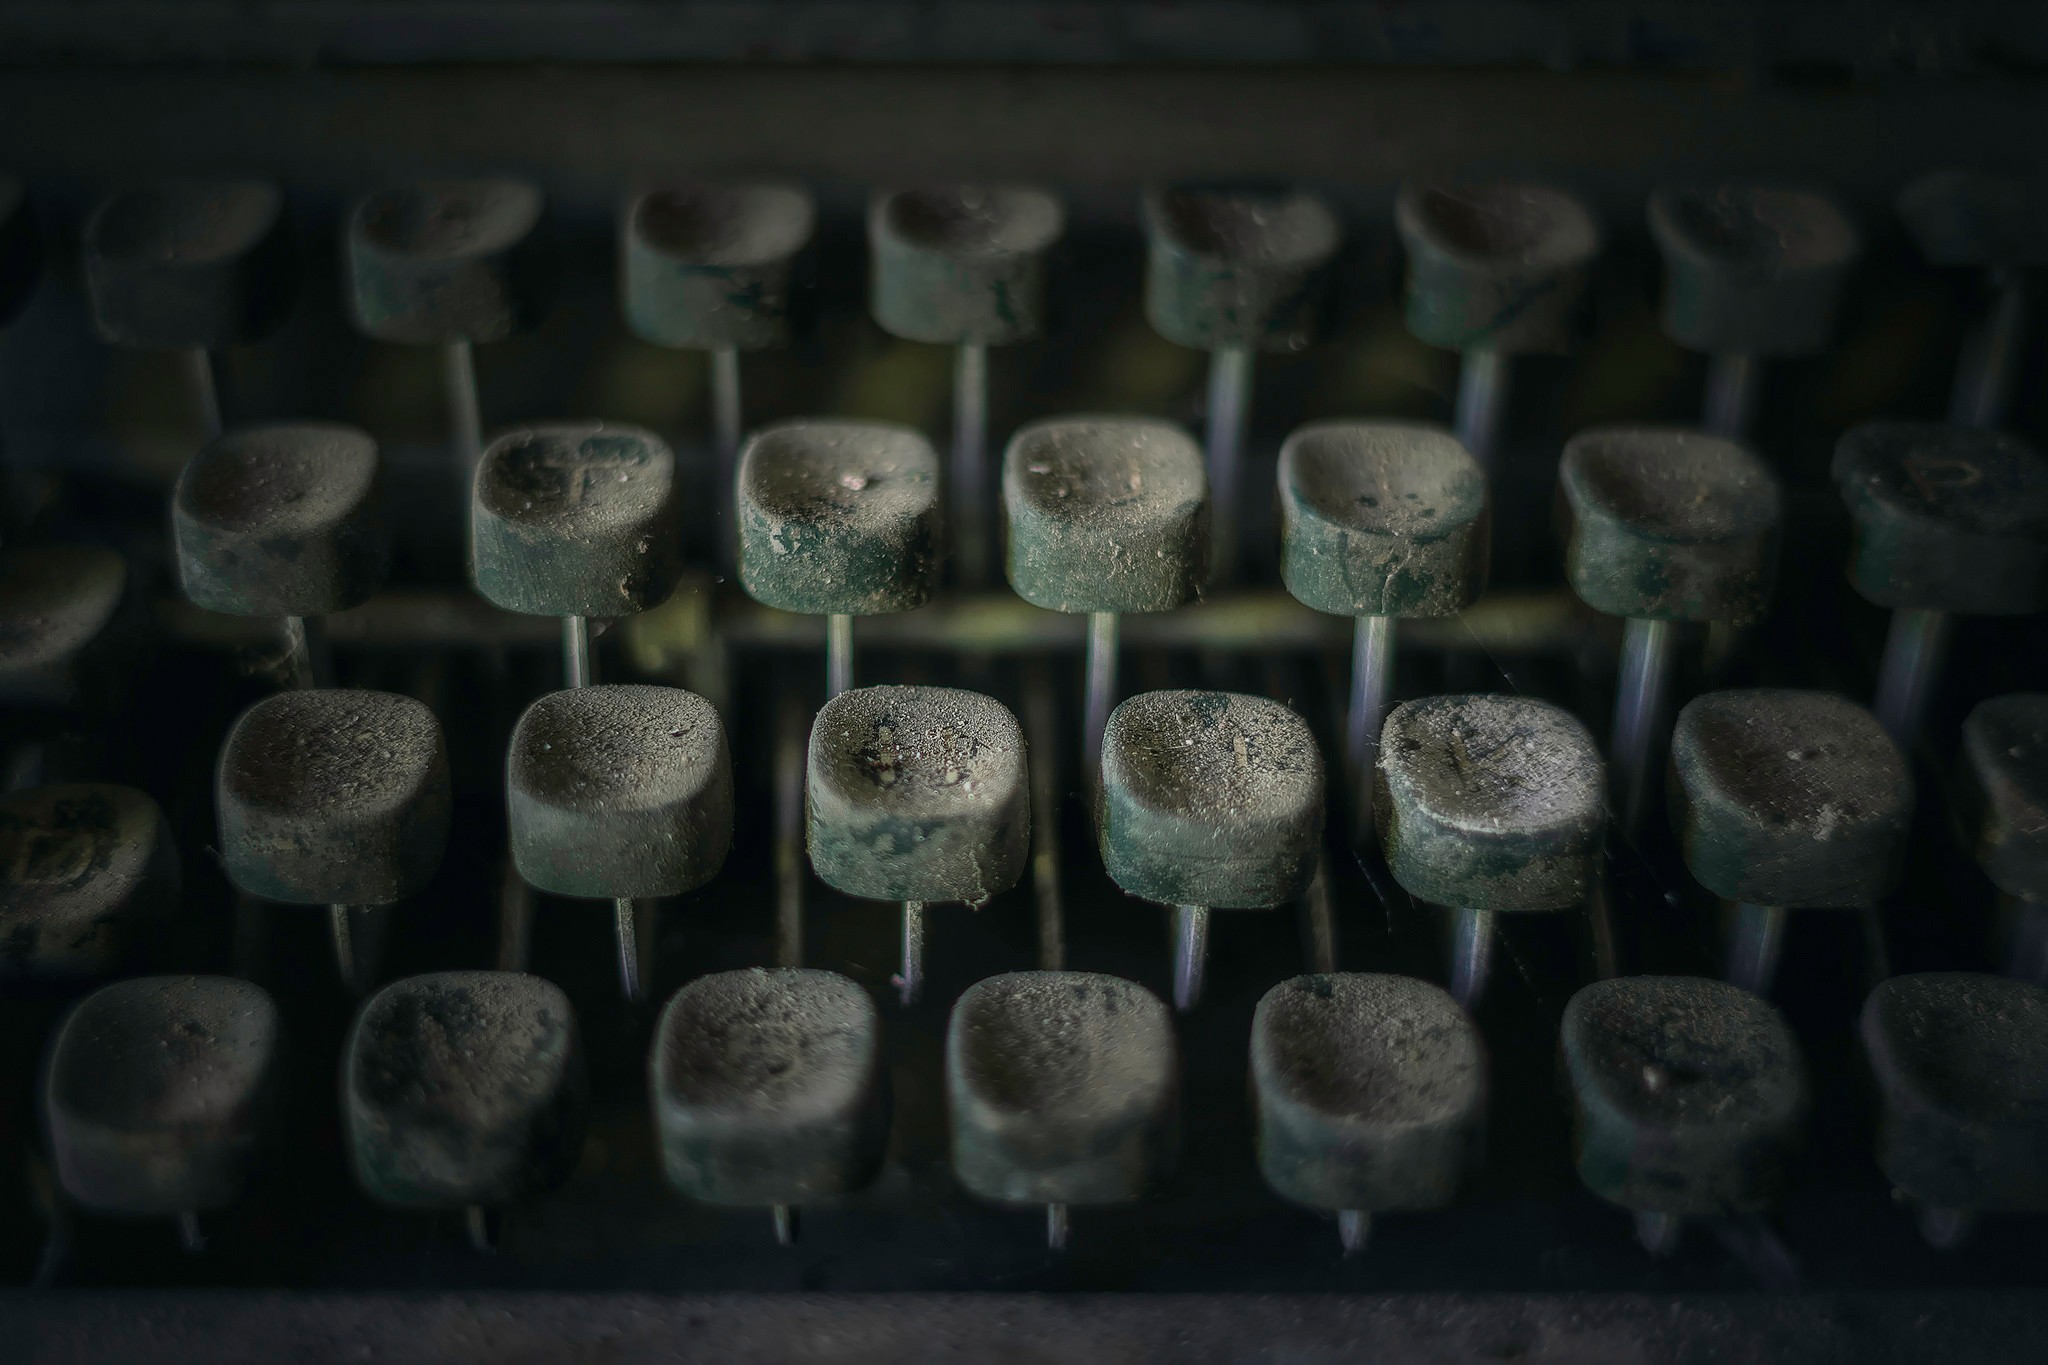 General 2048x1365 dust macro typewriters old